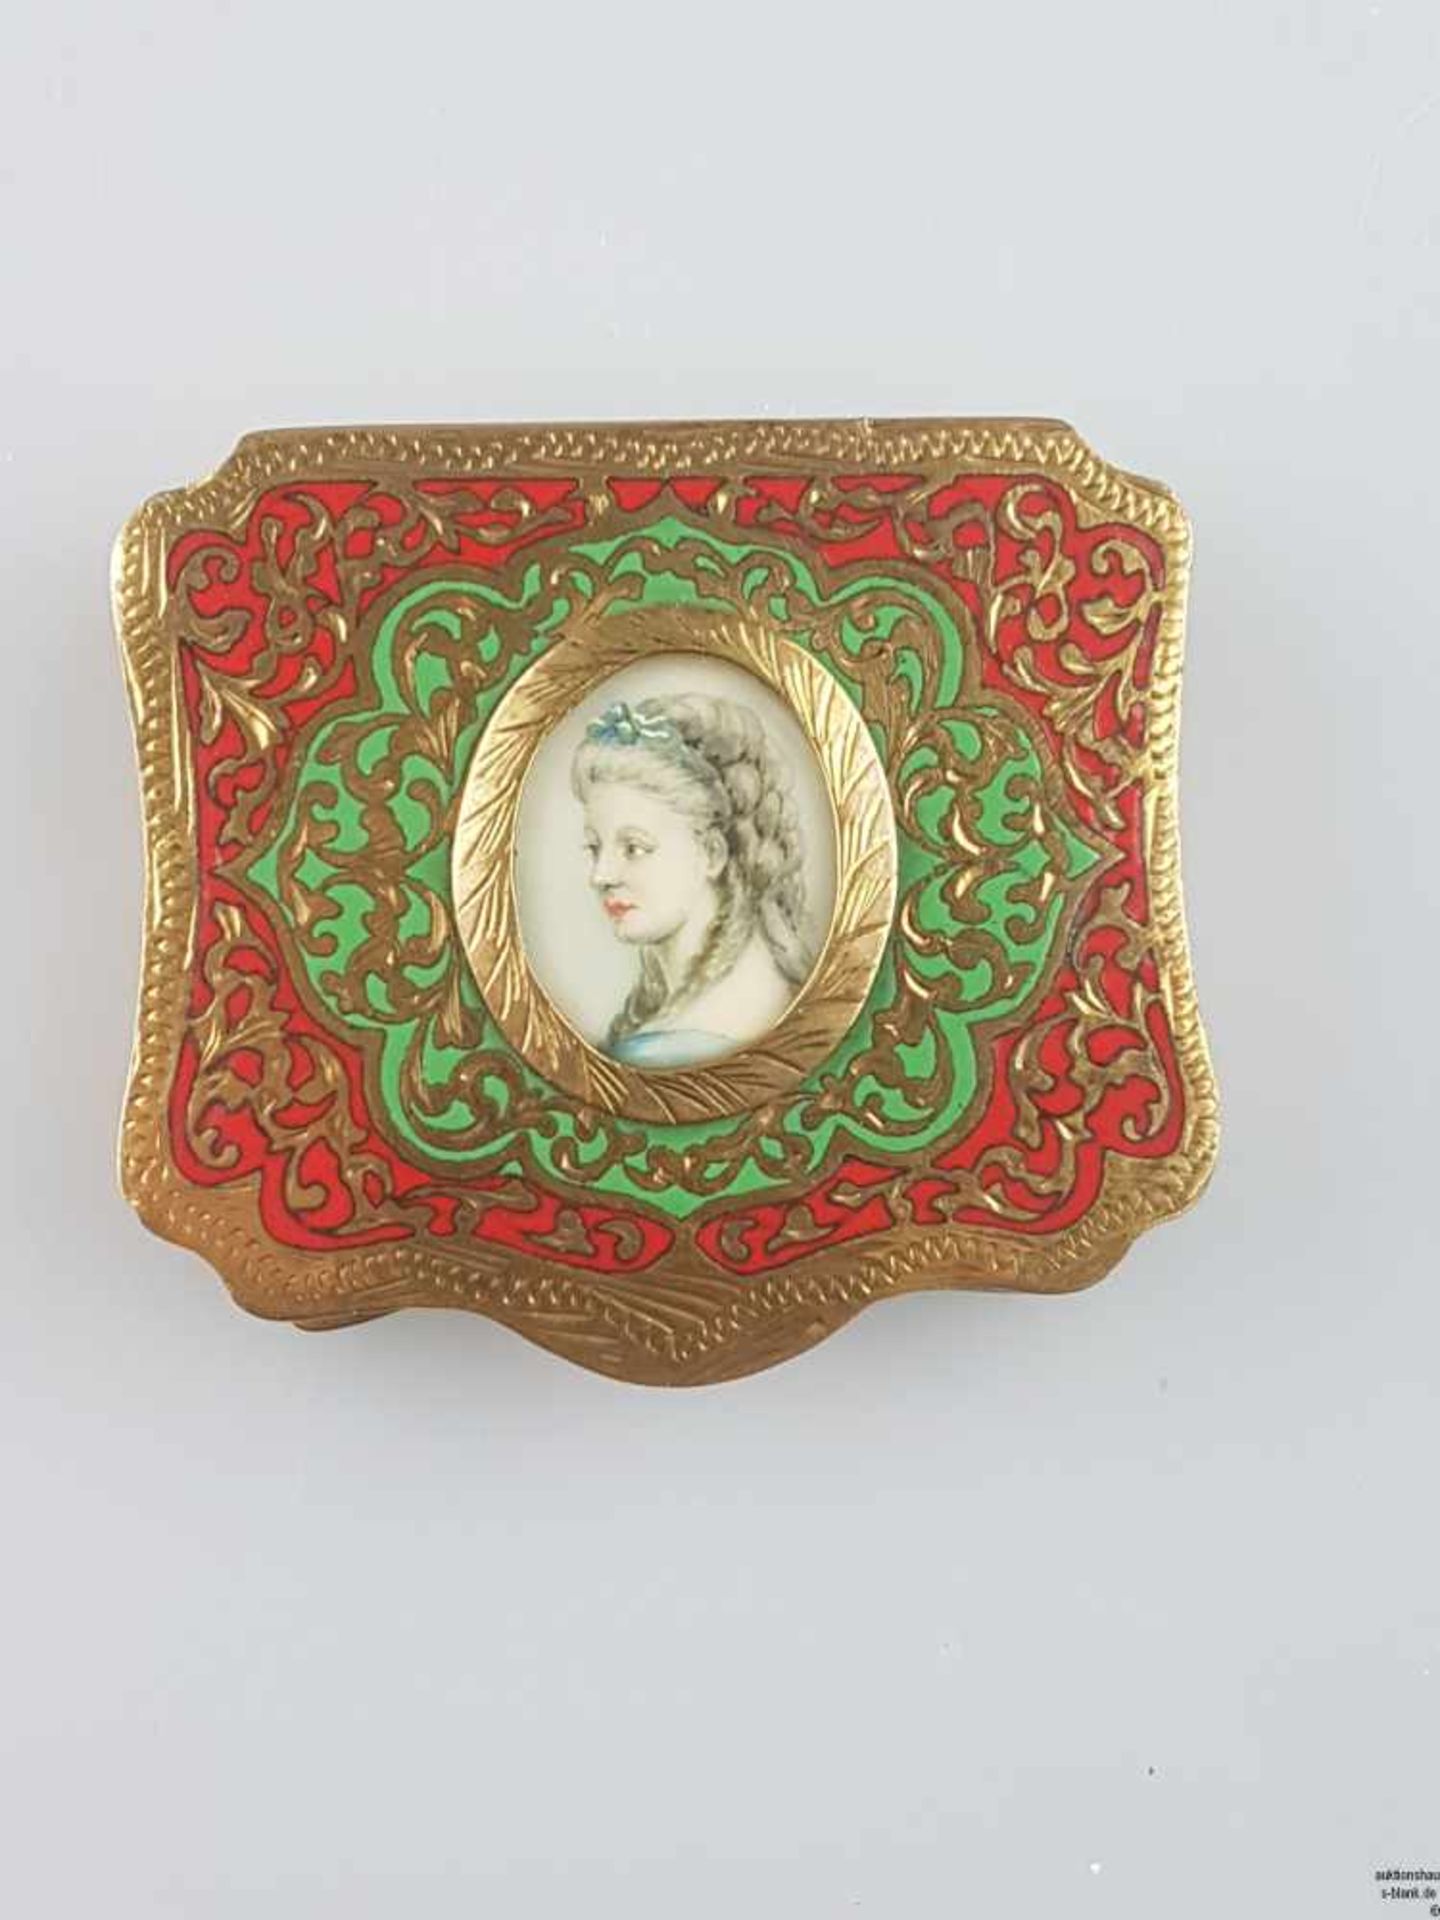 Puderdose - Frankreich, um 1850, Silber, feuervergoldet, reich ziseliert, Deckel mit grünem und